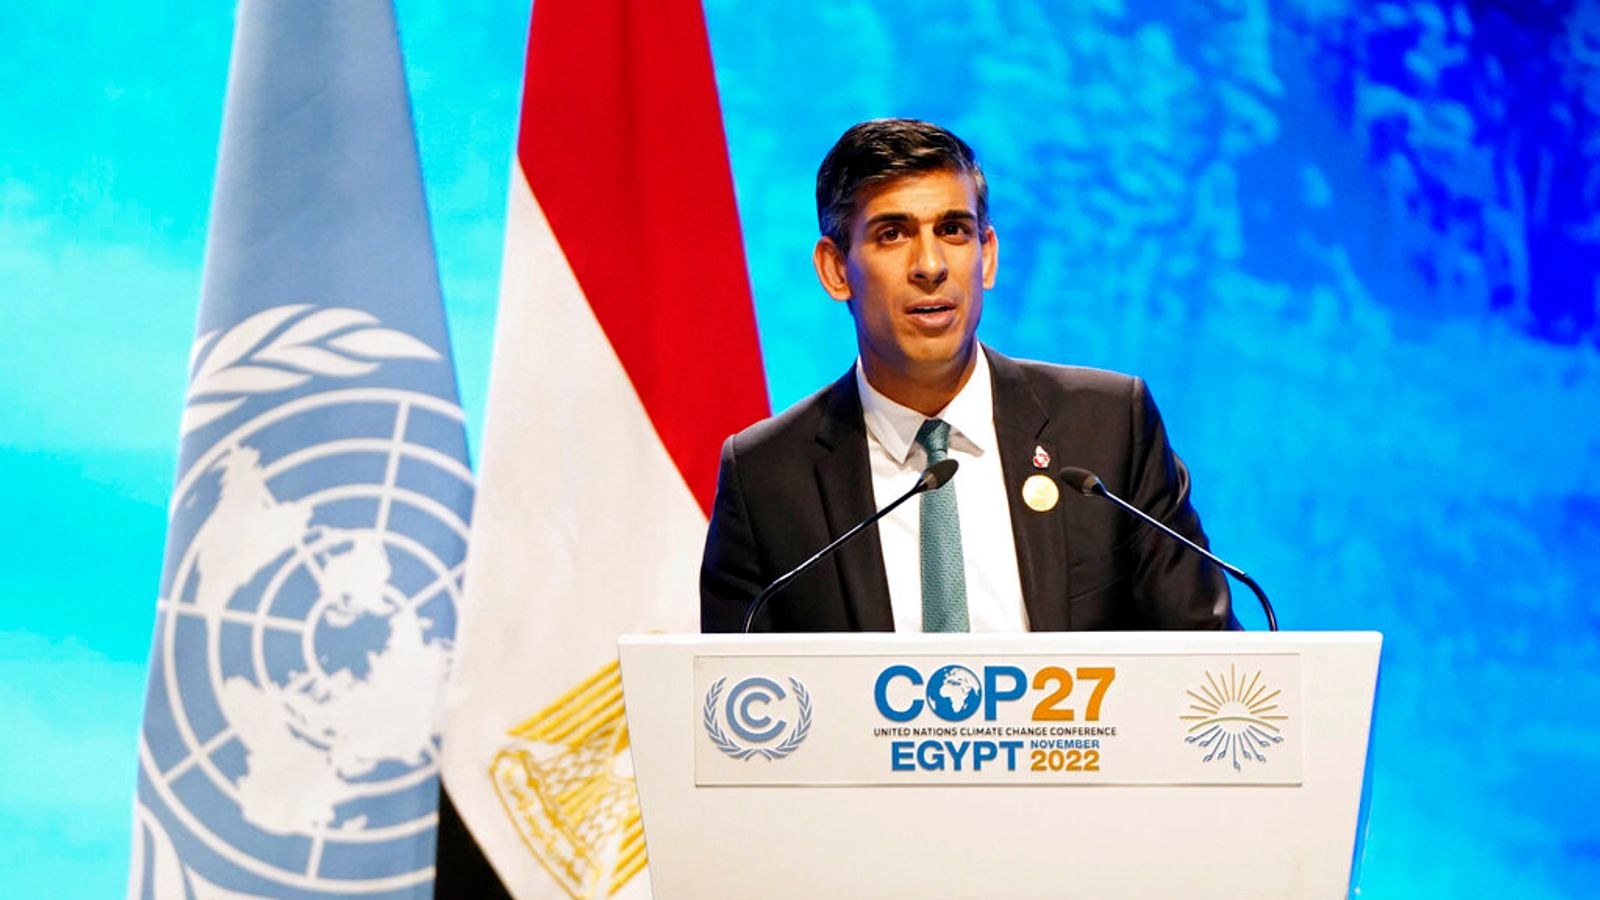 Des députés de tous les partis font pression sur le Premier ministre pour qu’il assiste aux négociations sur la nature de la COP15, avertissant d’un “risque d’échec” s’il n’y va pas |  Actualité Climatique